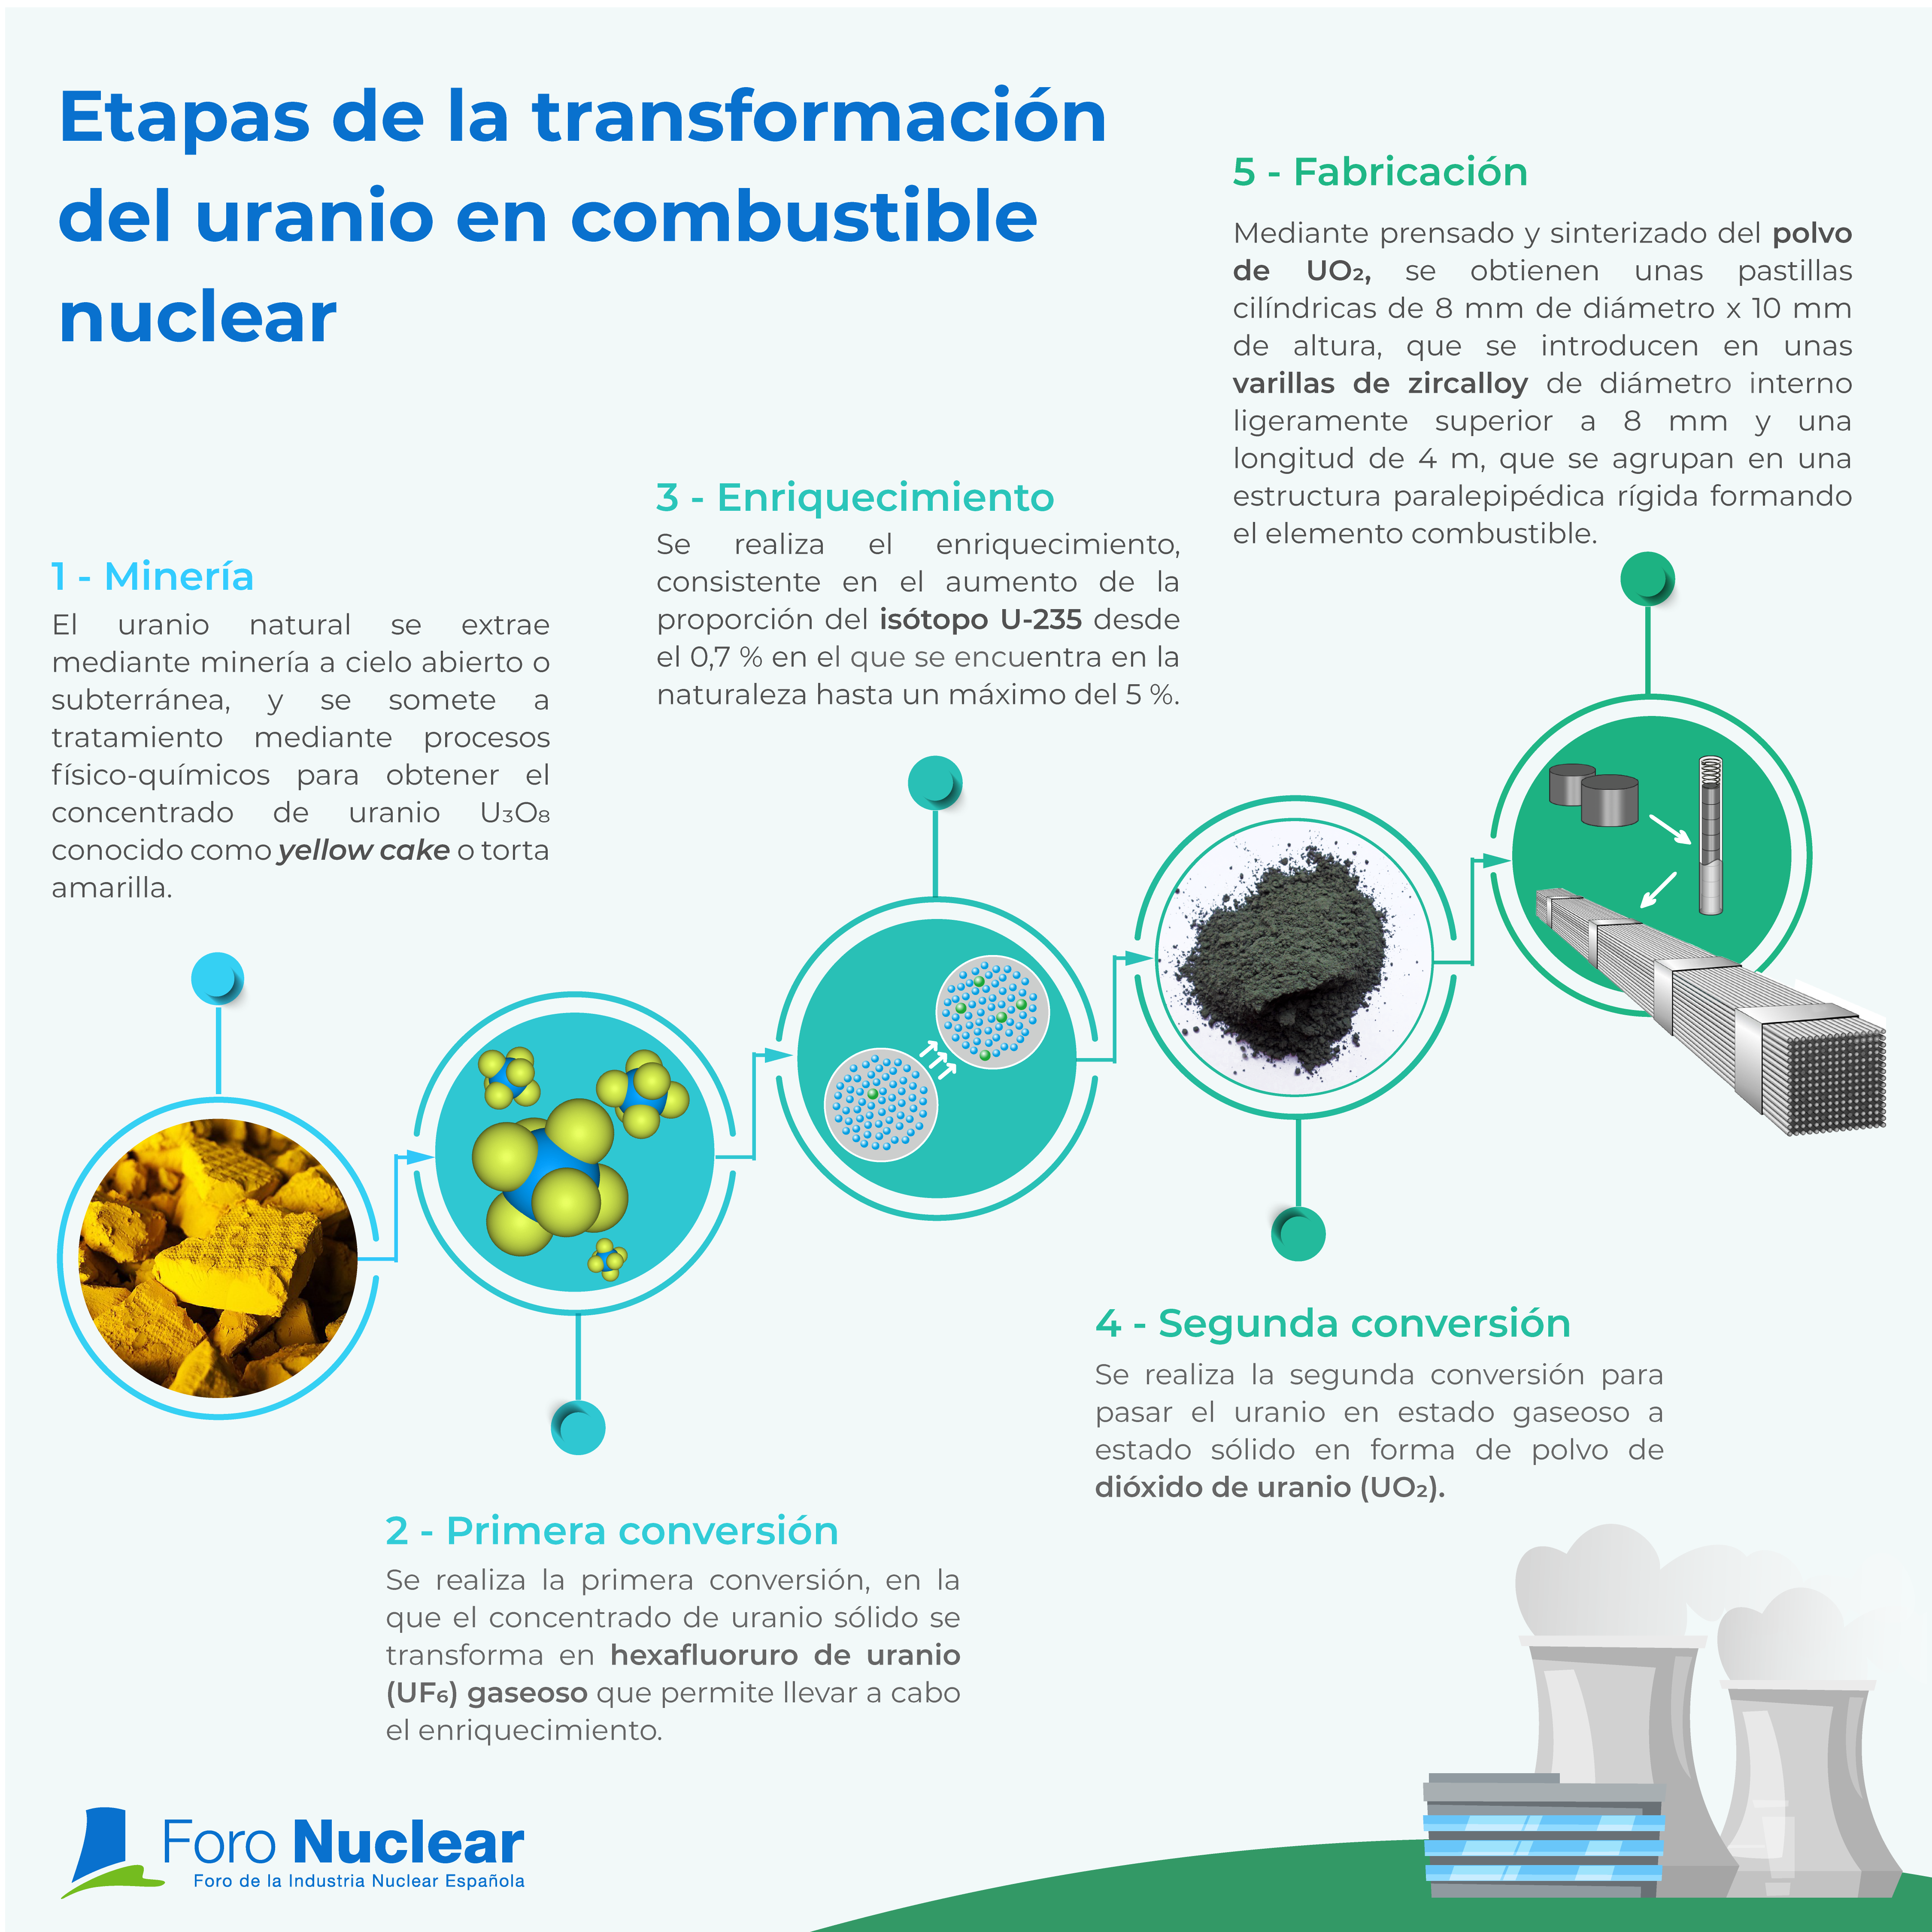 Etapas de transformación del uranio en combustible nuclear